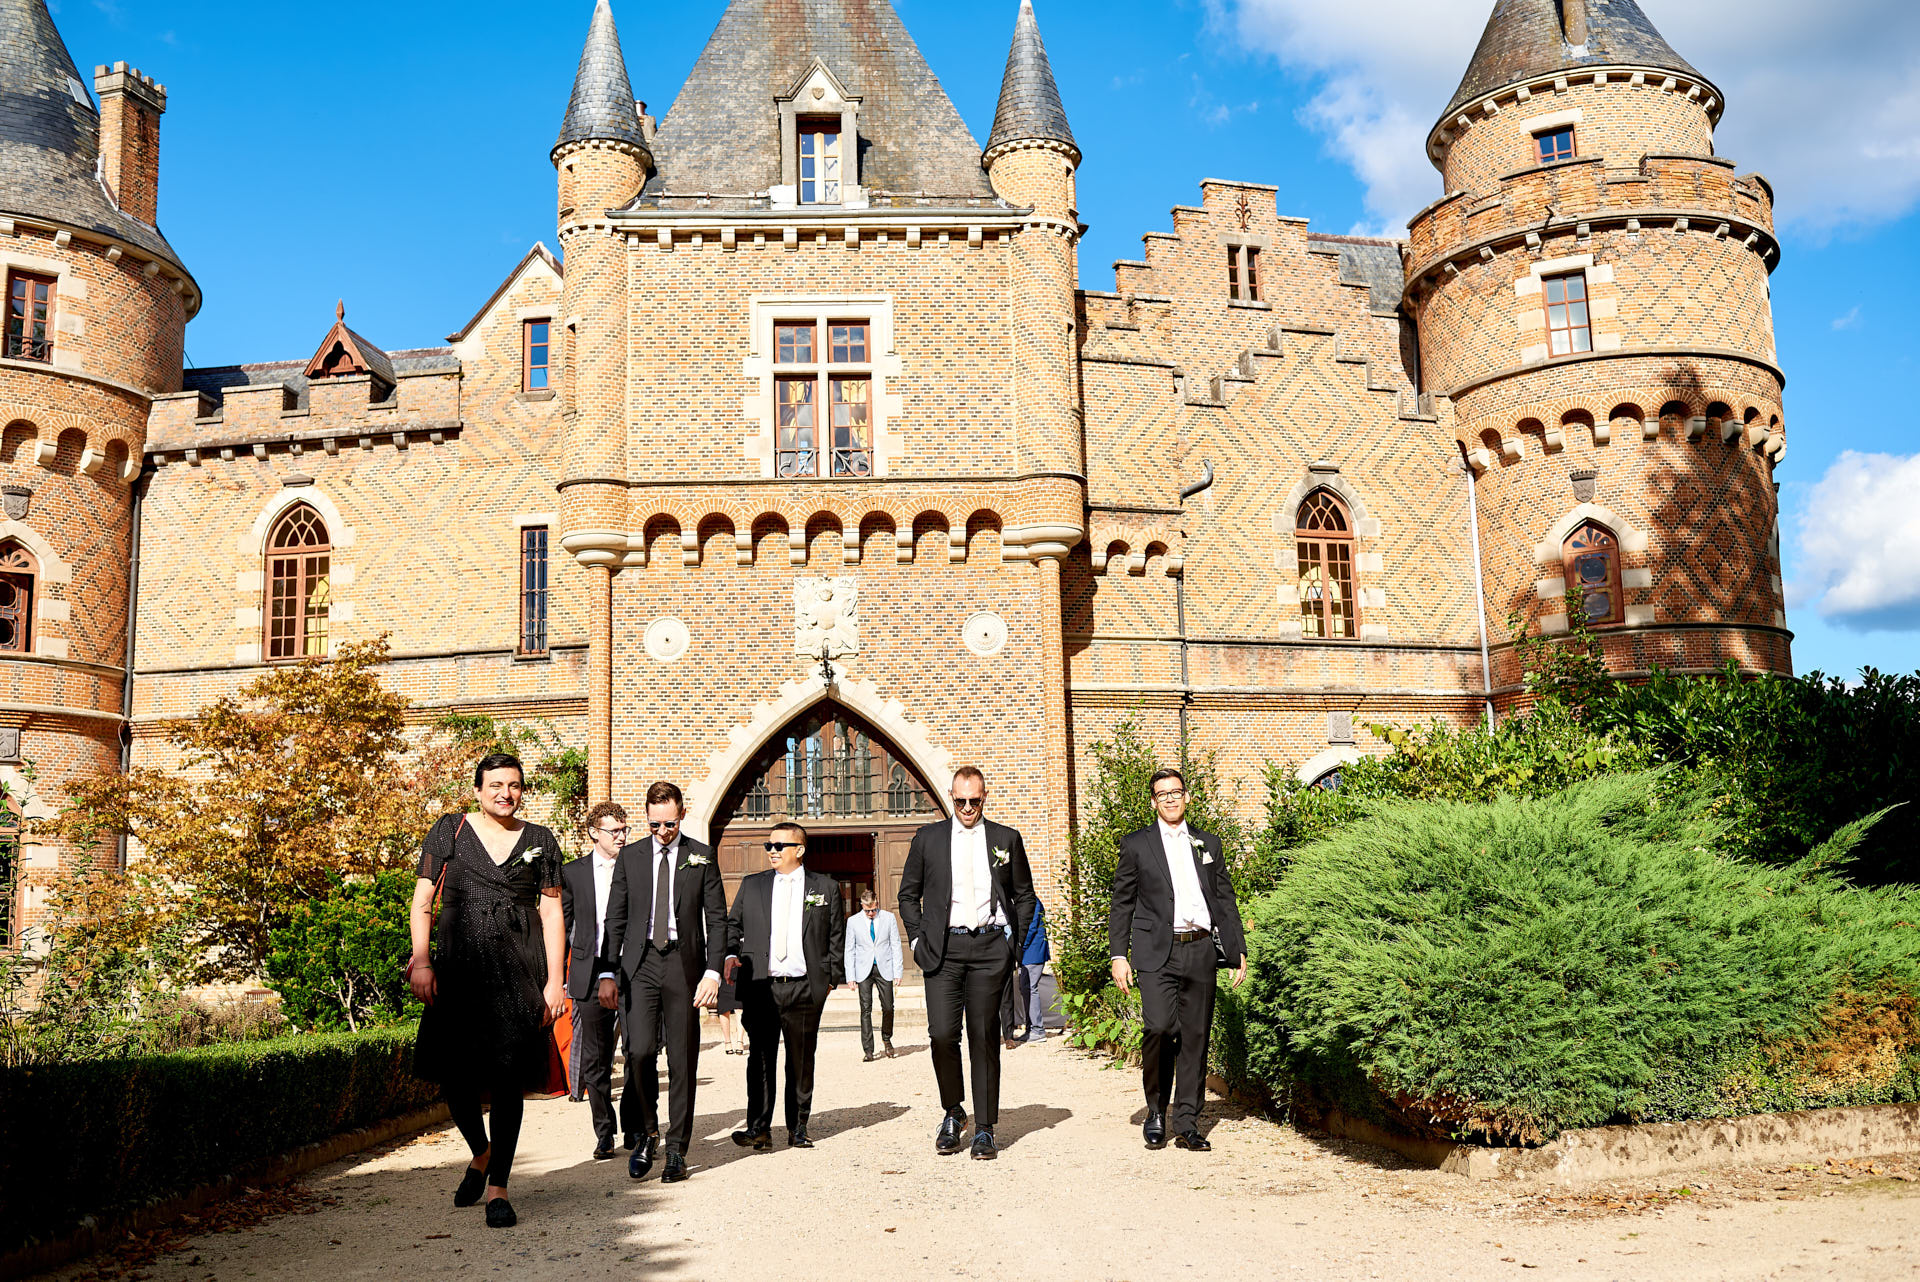 Les garçons d'honneur vont à la cérémonie du chateau de Maulmont France